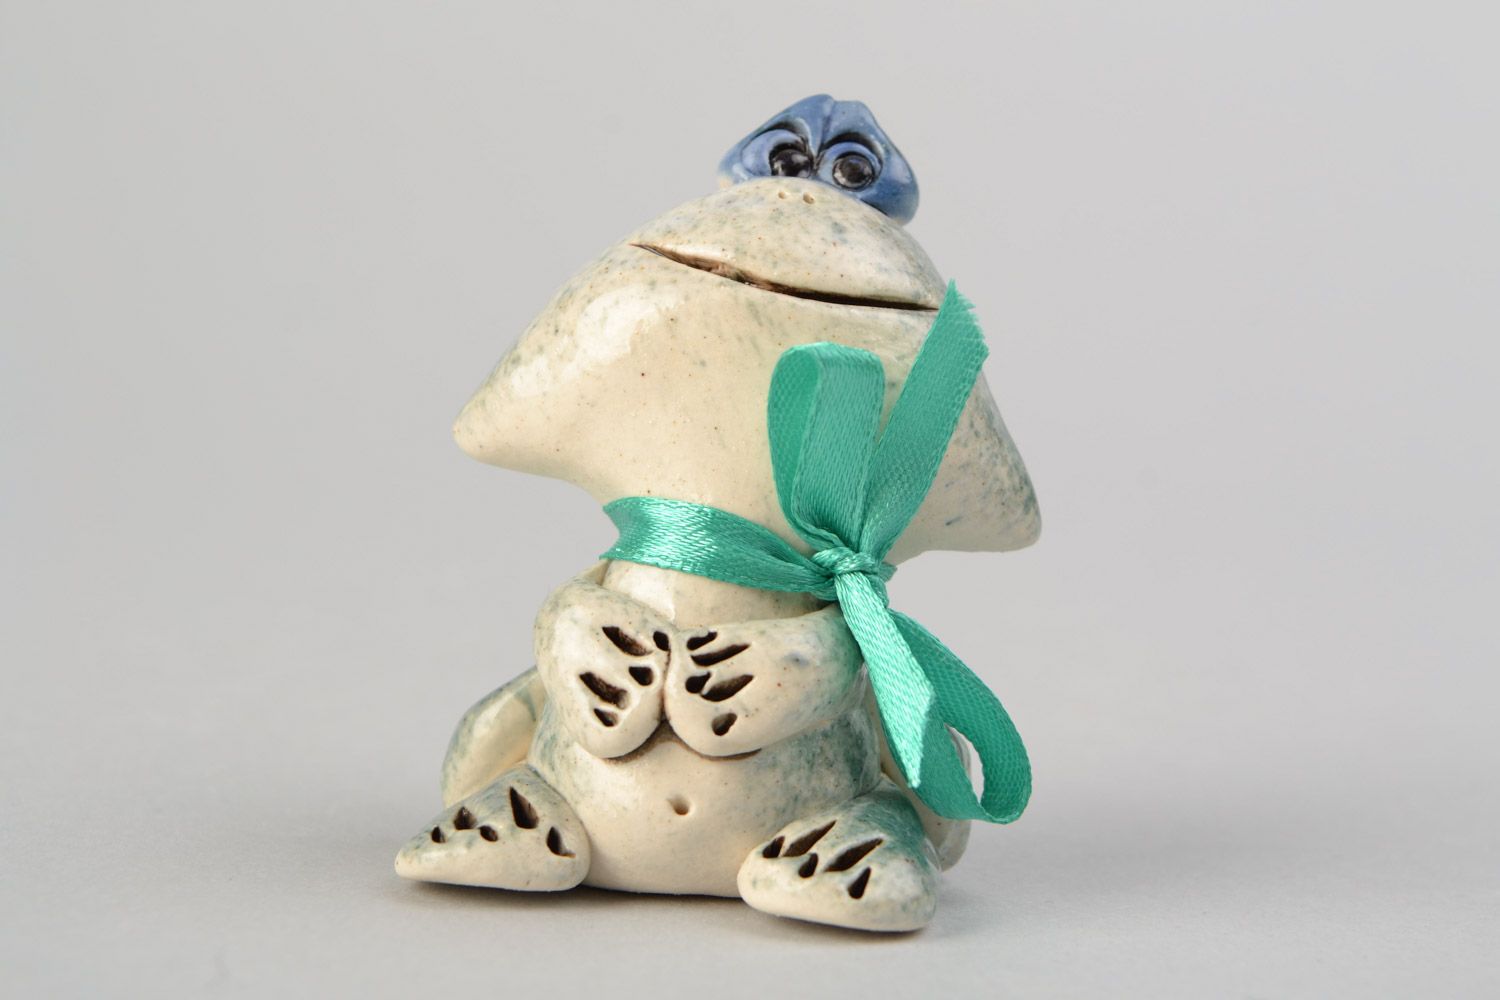 Авторская расписанная глазурью глиняная фигурка лягушки-мальчика ручной работы фото 4